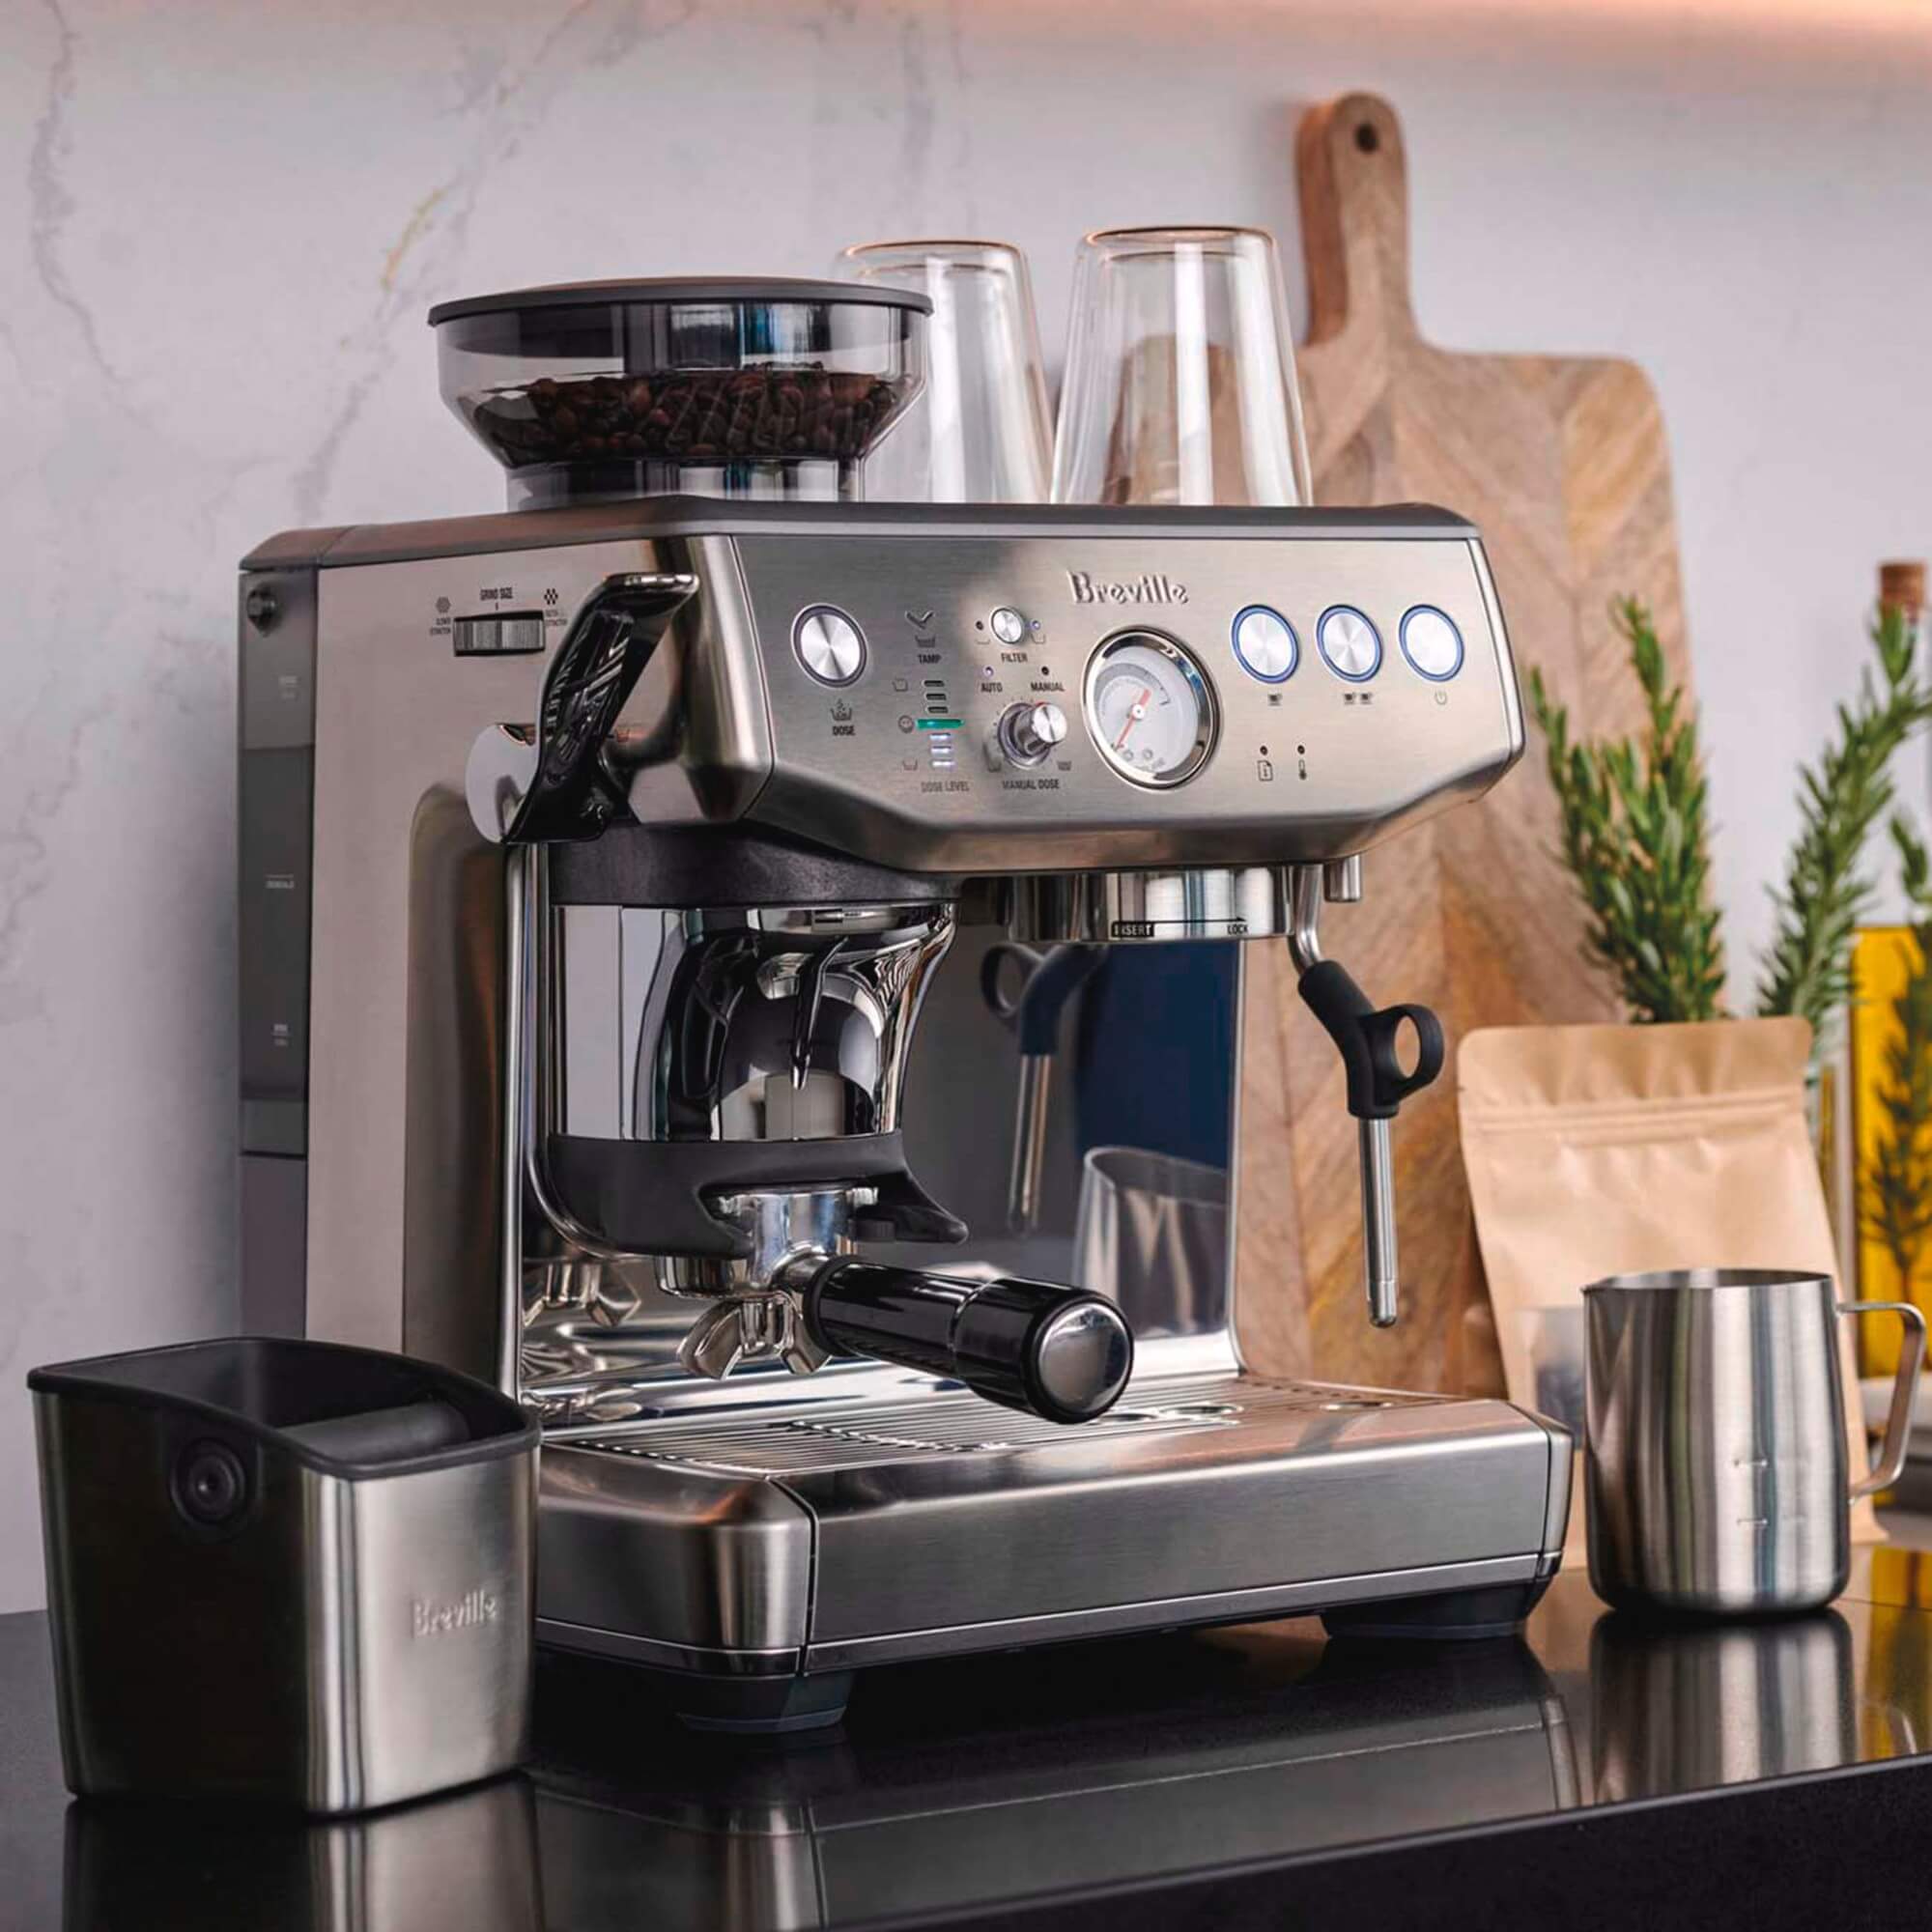 Giới thiệu về máy pha cà phê Breville